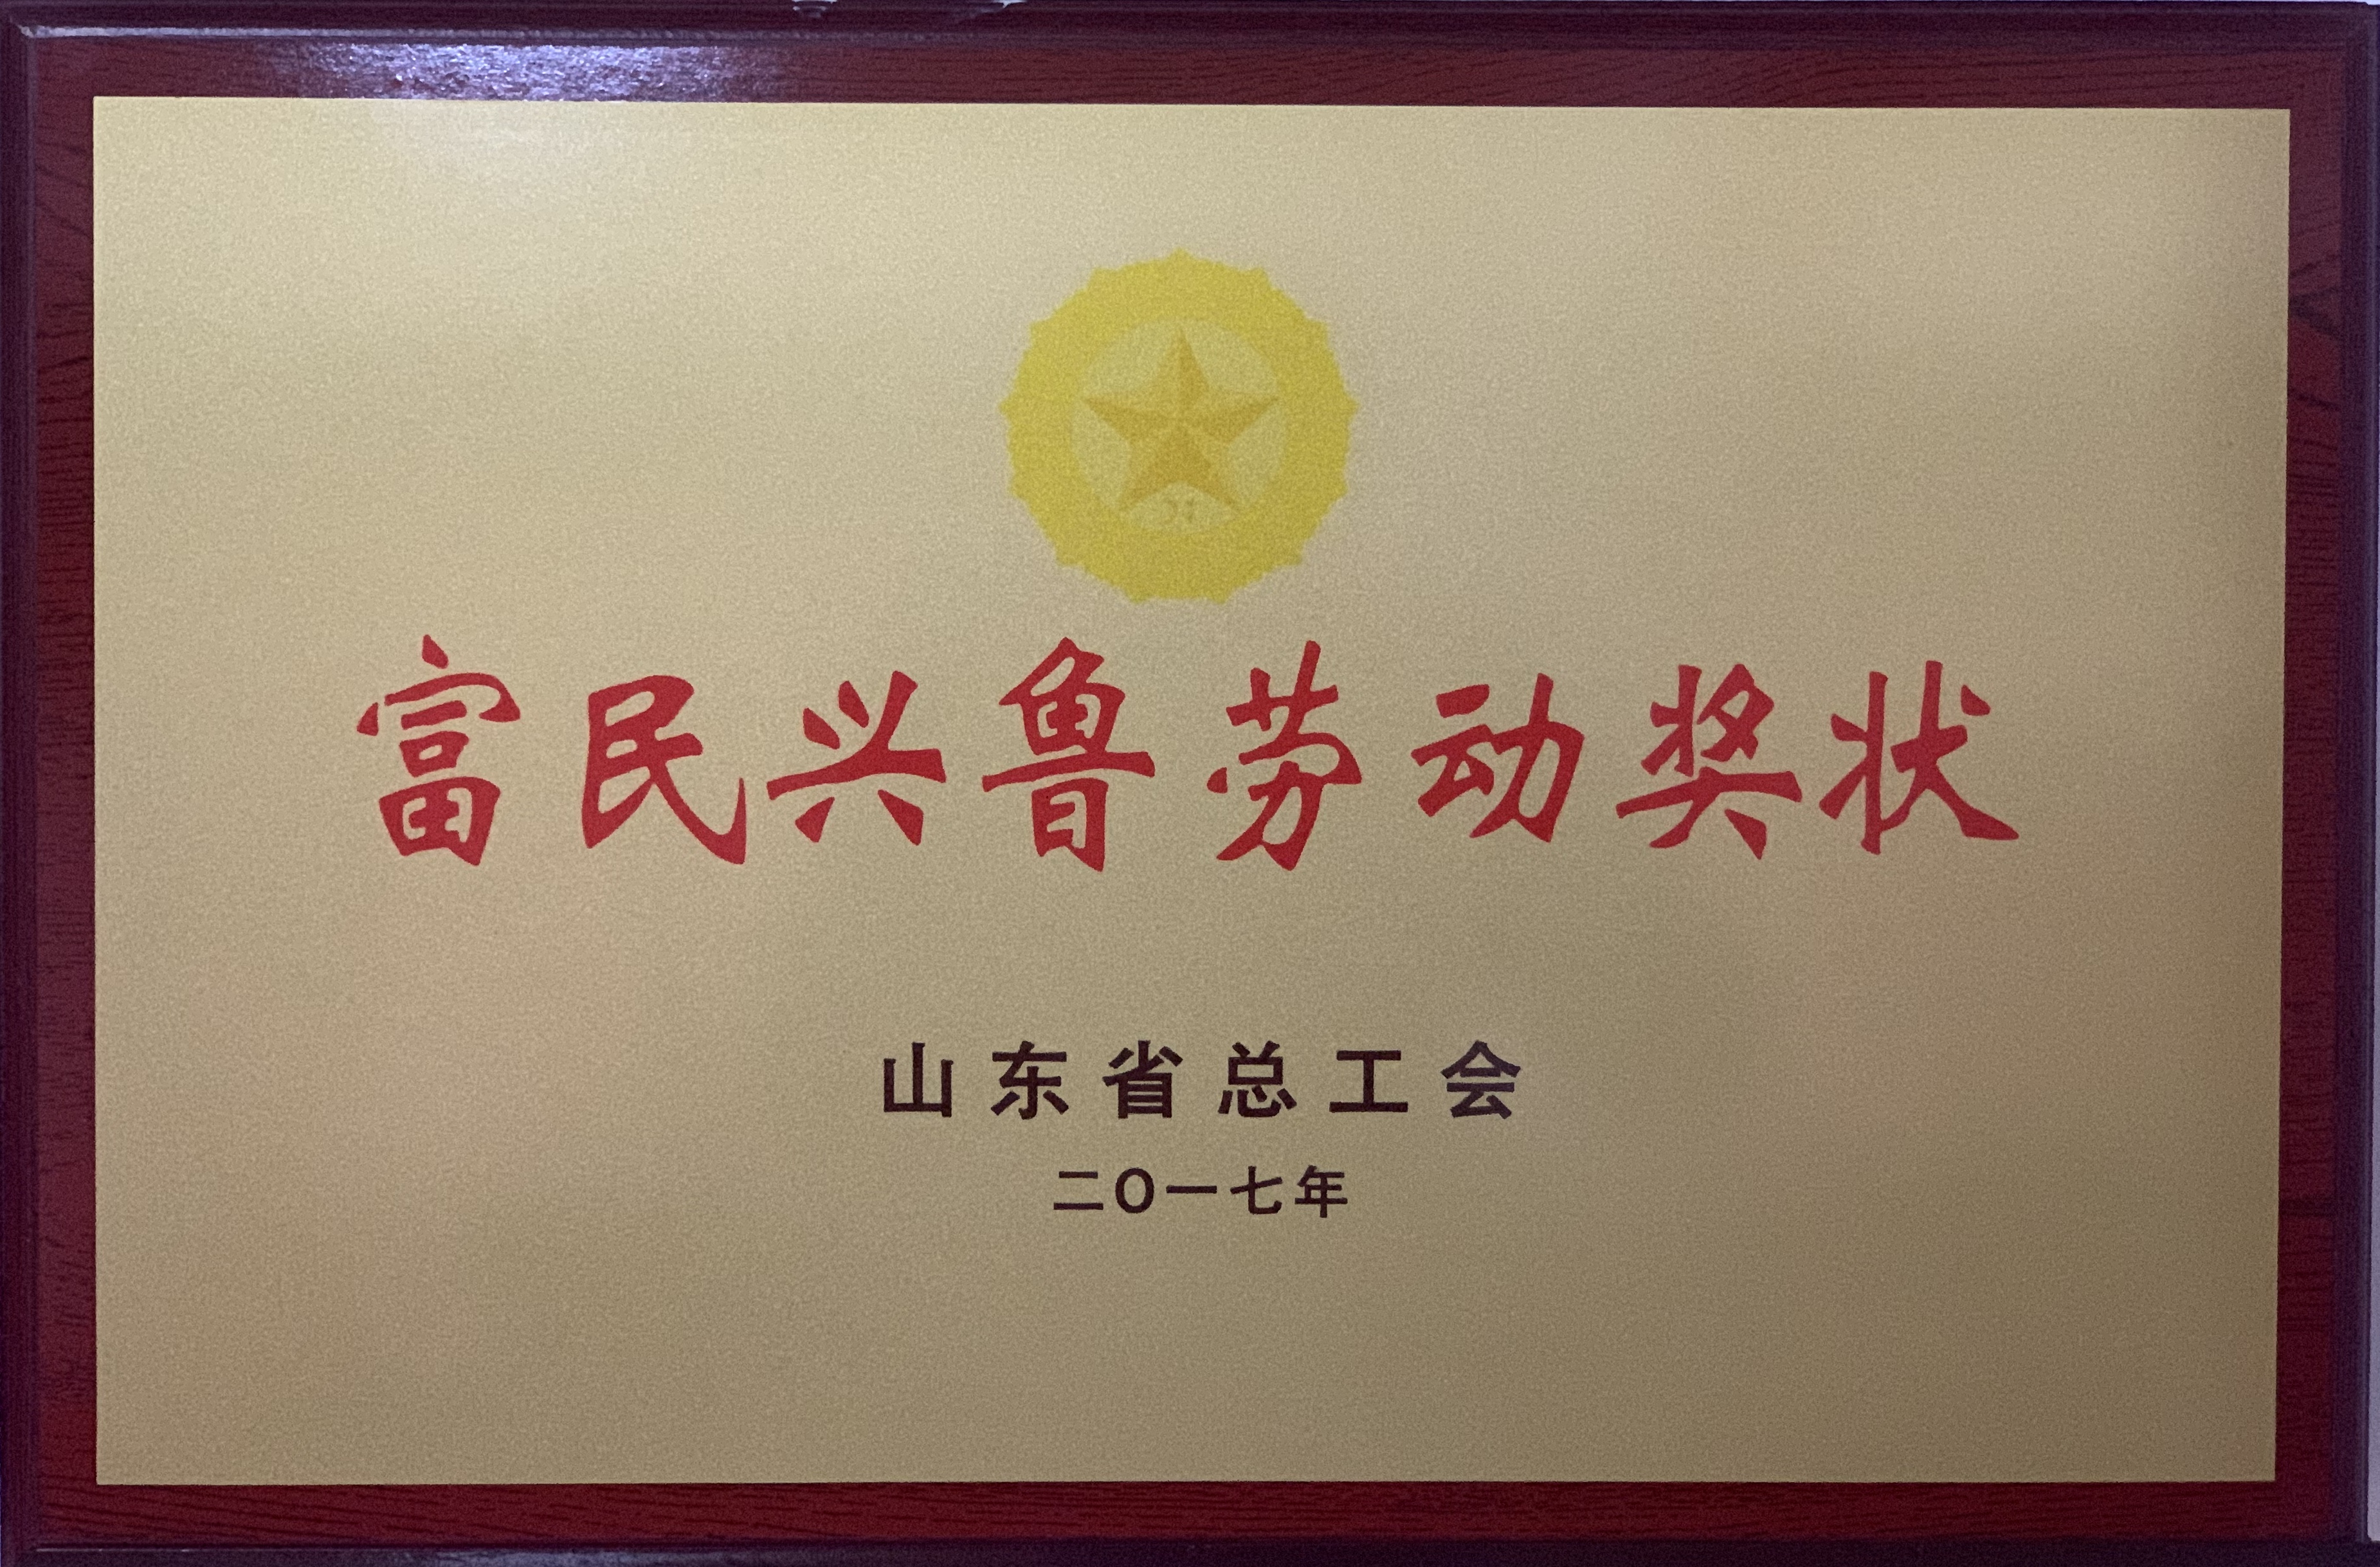 濟寧四和供熱有限公司榮獲山東省總工會富民興魯勞動獎狀